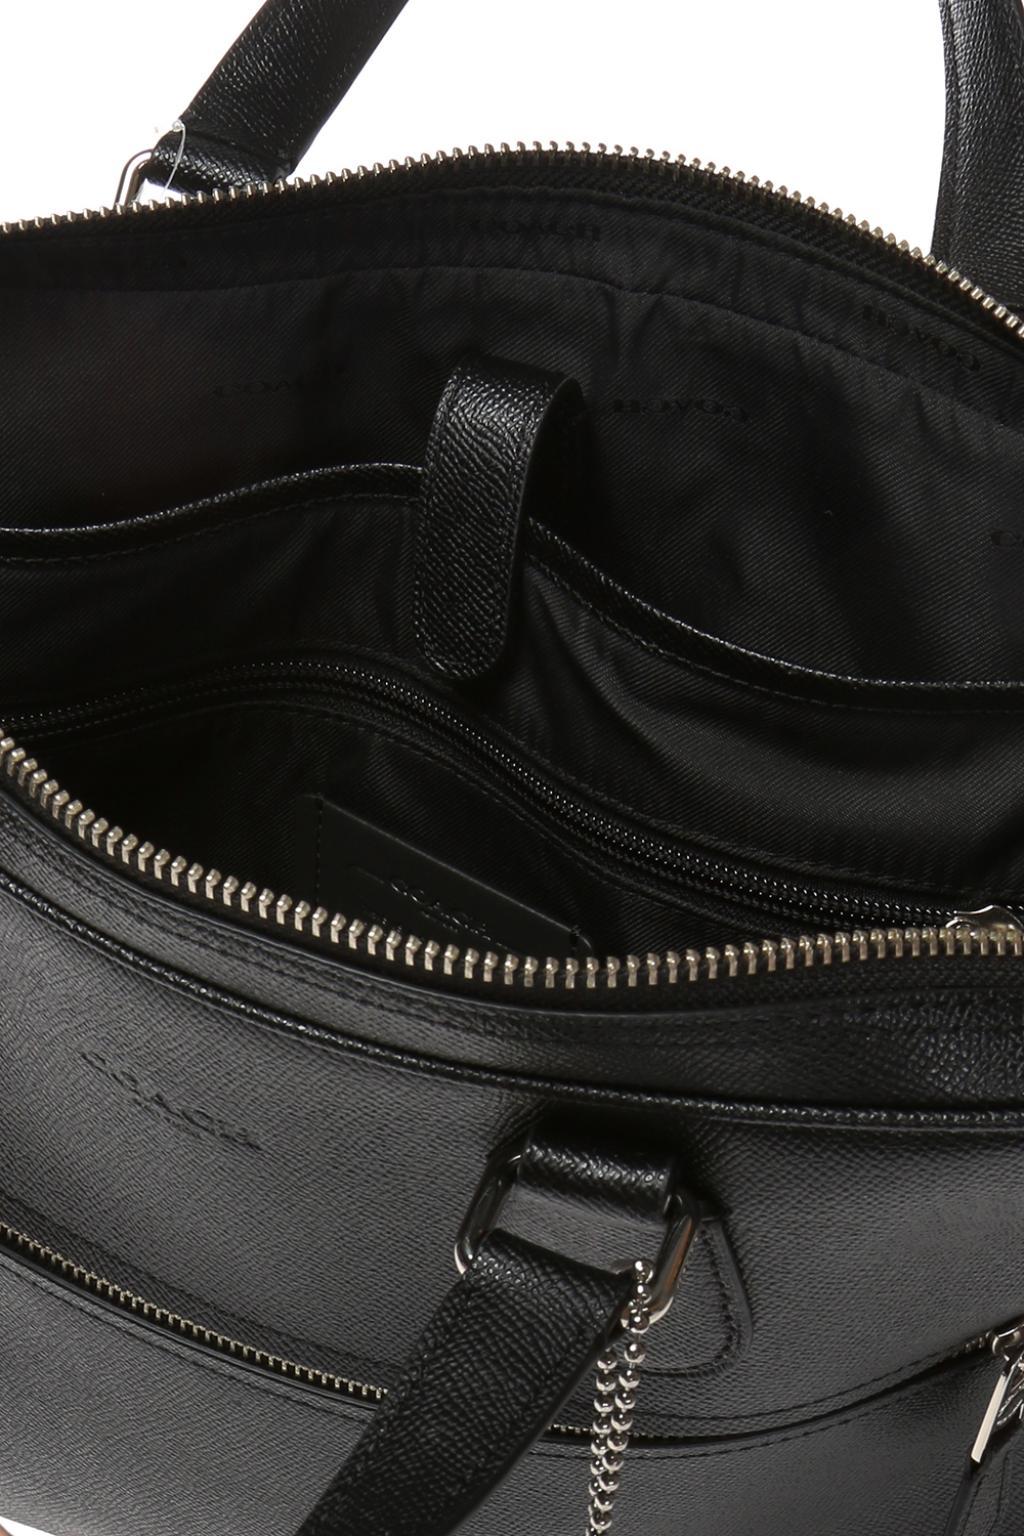 leather coach laptop bag